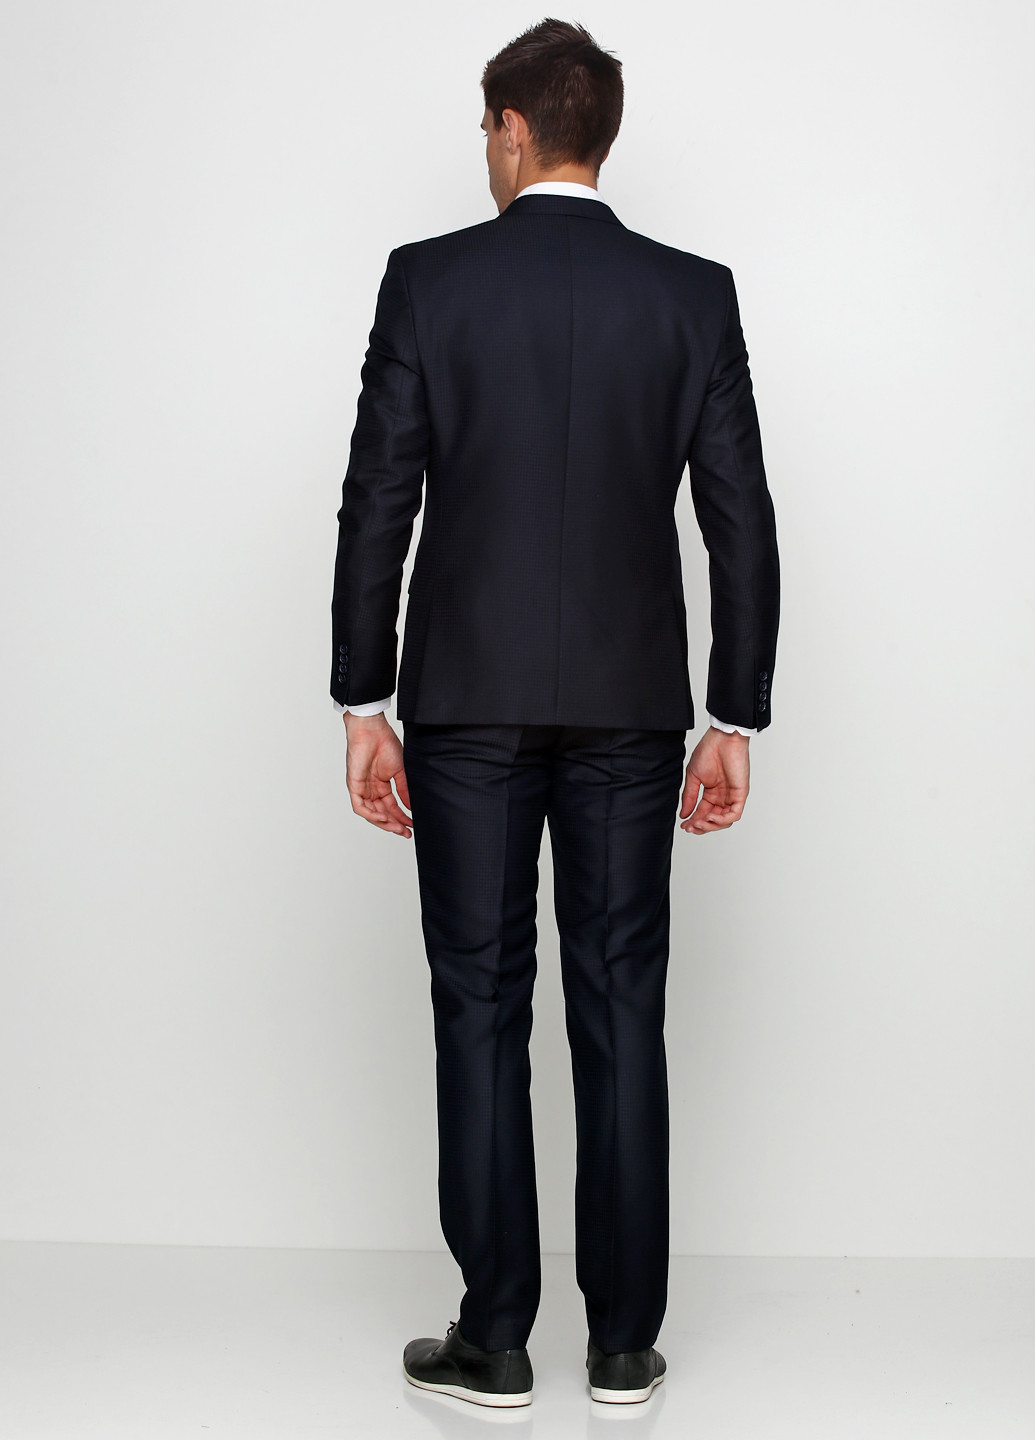 Черный демисезонный костюм (пиджак, брюки) брючный Federico Cavallini